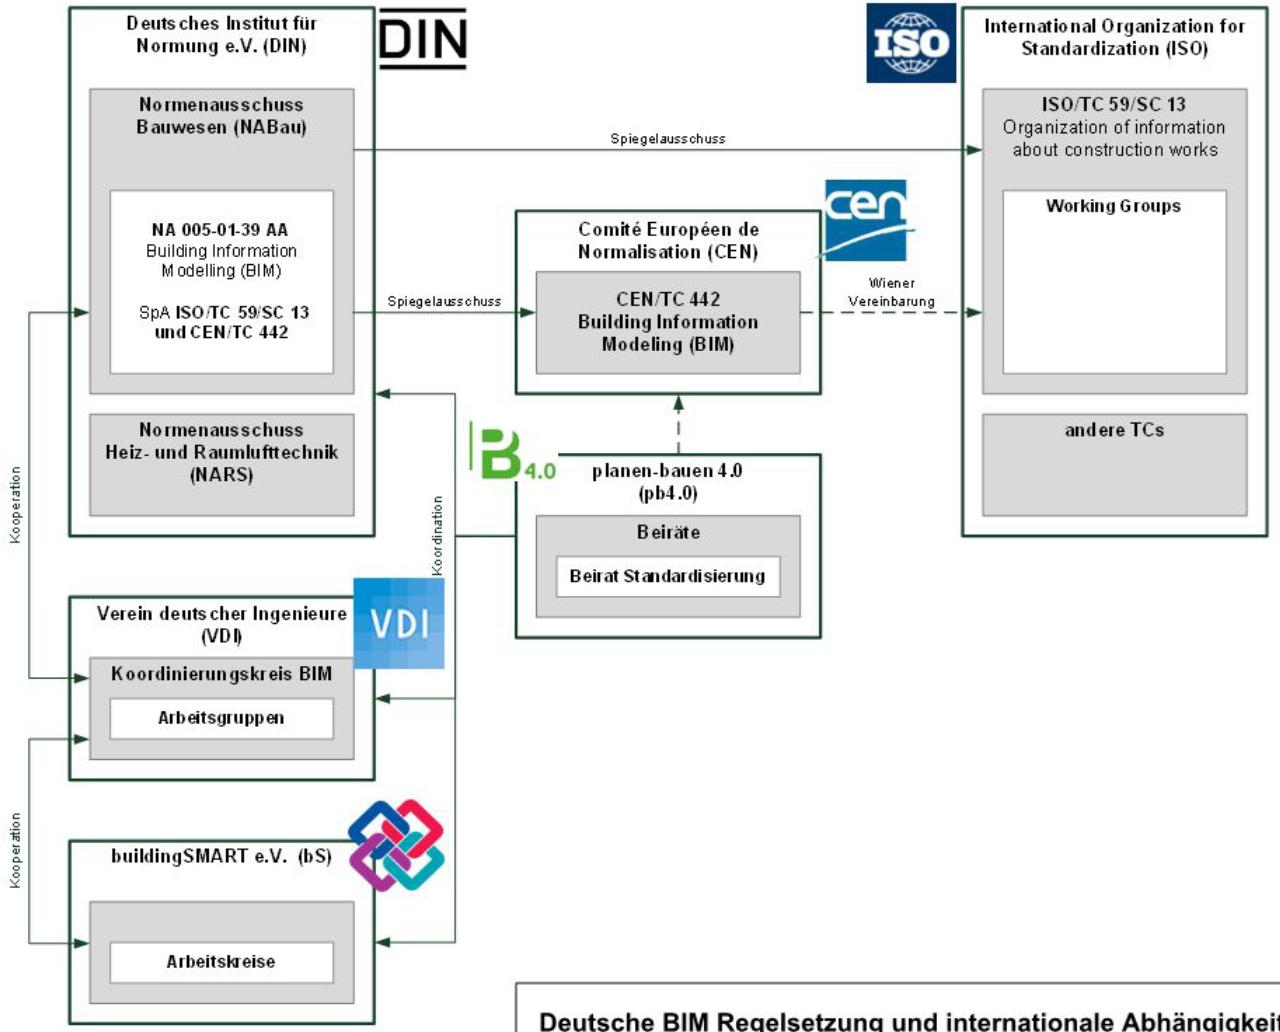 Richtlinien und Normen Deutsche BIM Regelsetzung und internationale Abhängigkeit > 25 Normungsausschüsse DIN Normenausschuss NABau VDI